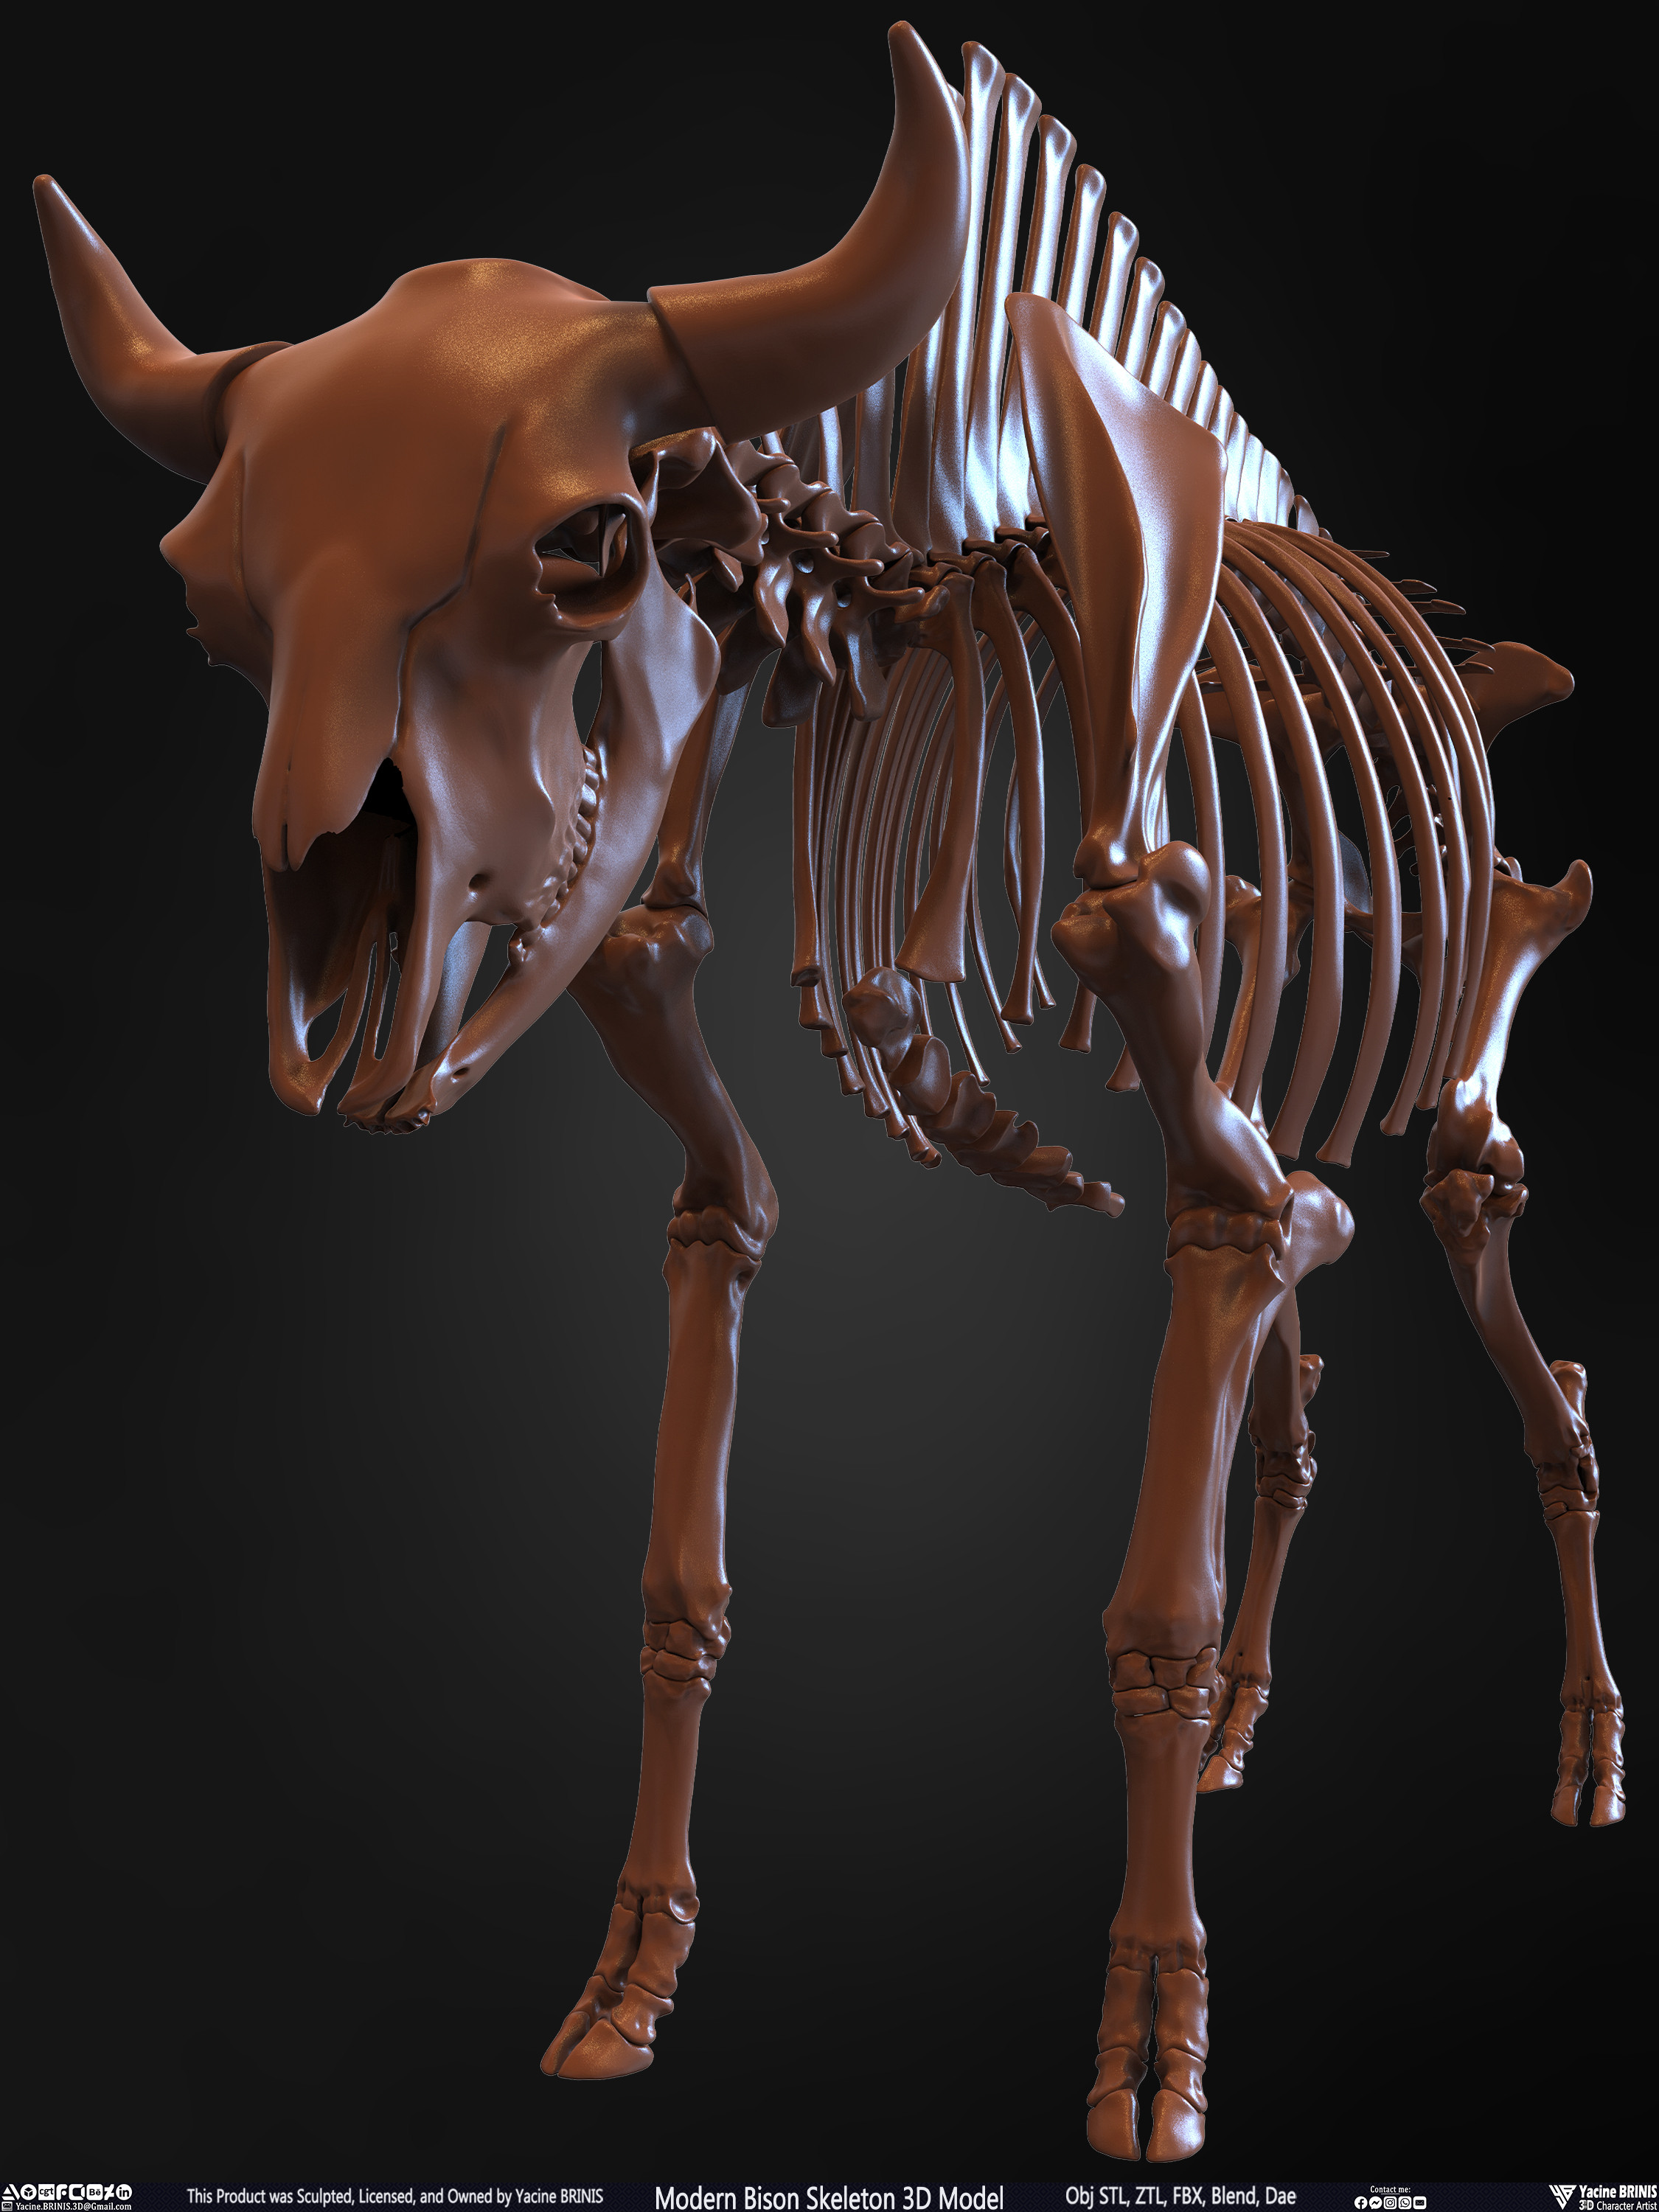 Modern Bison Skeleton 3D Model Sculpted by Yacine BRINIS Set 012